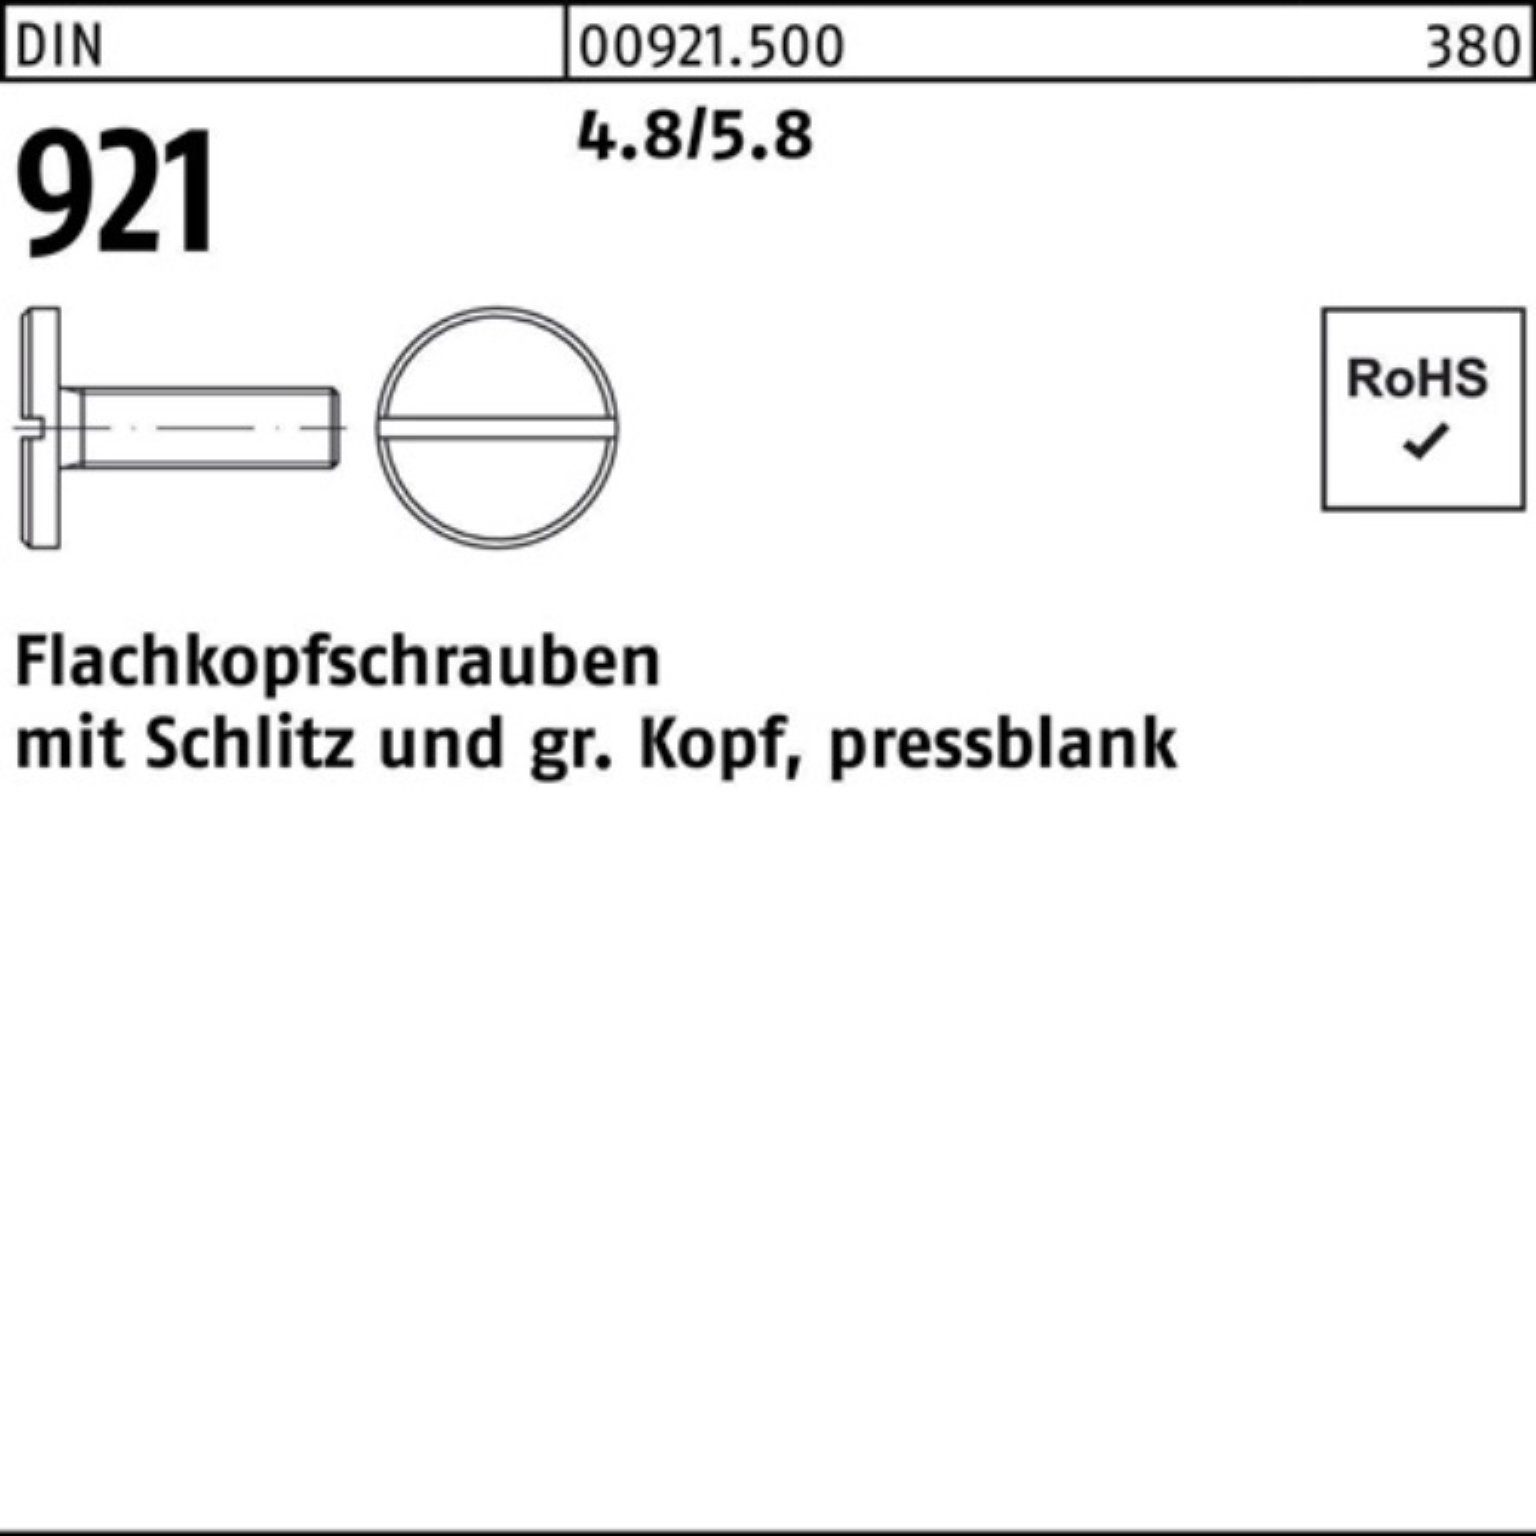 Flachkopfschraube 921 Stück 100 Reyher 100er DIN M8x Schlitz Pack Schraube 4.8/5.8 10